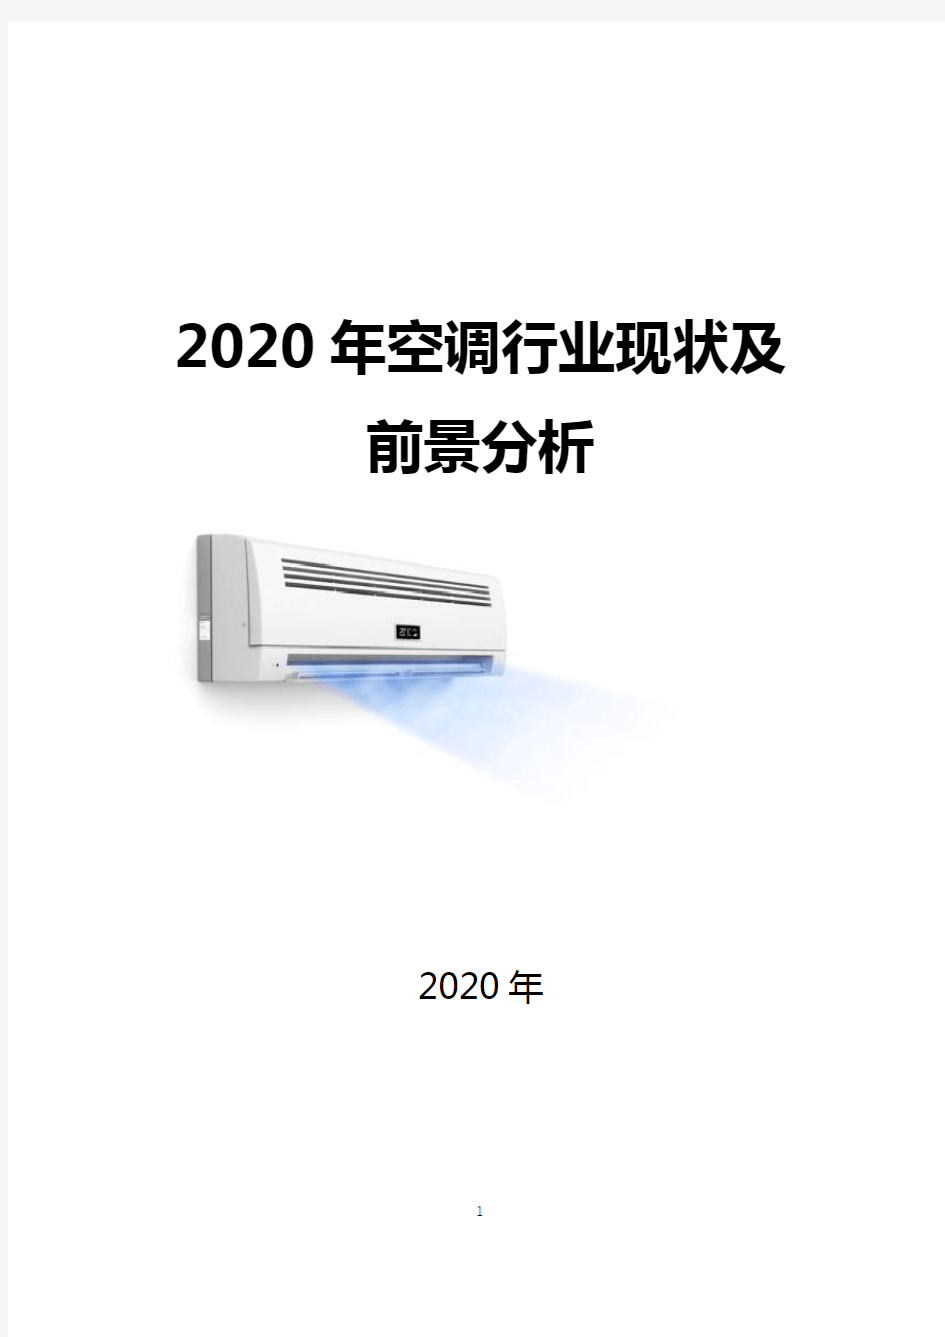 2020年空调行业现状及前景分析